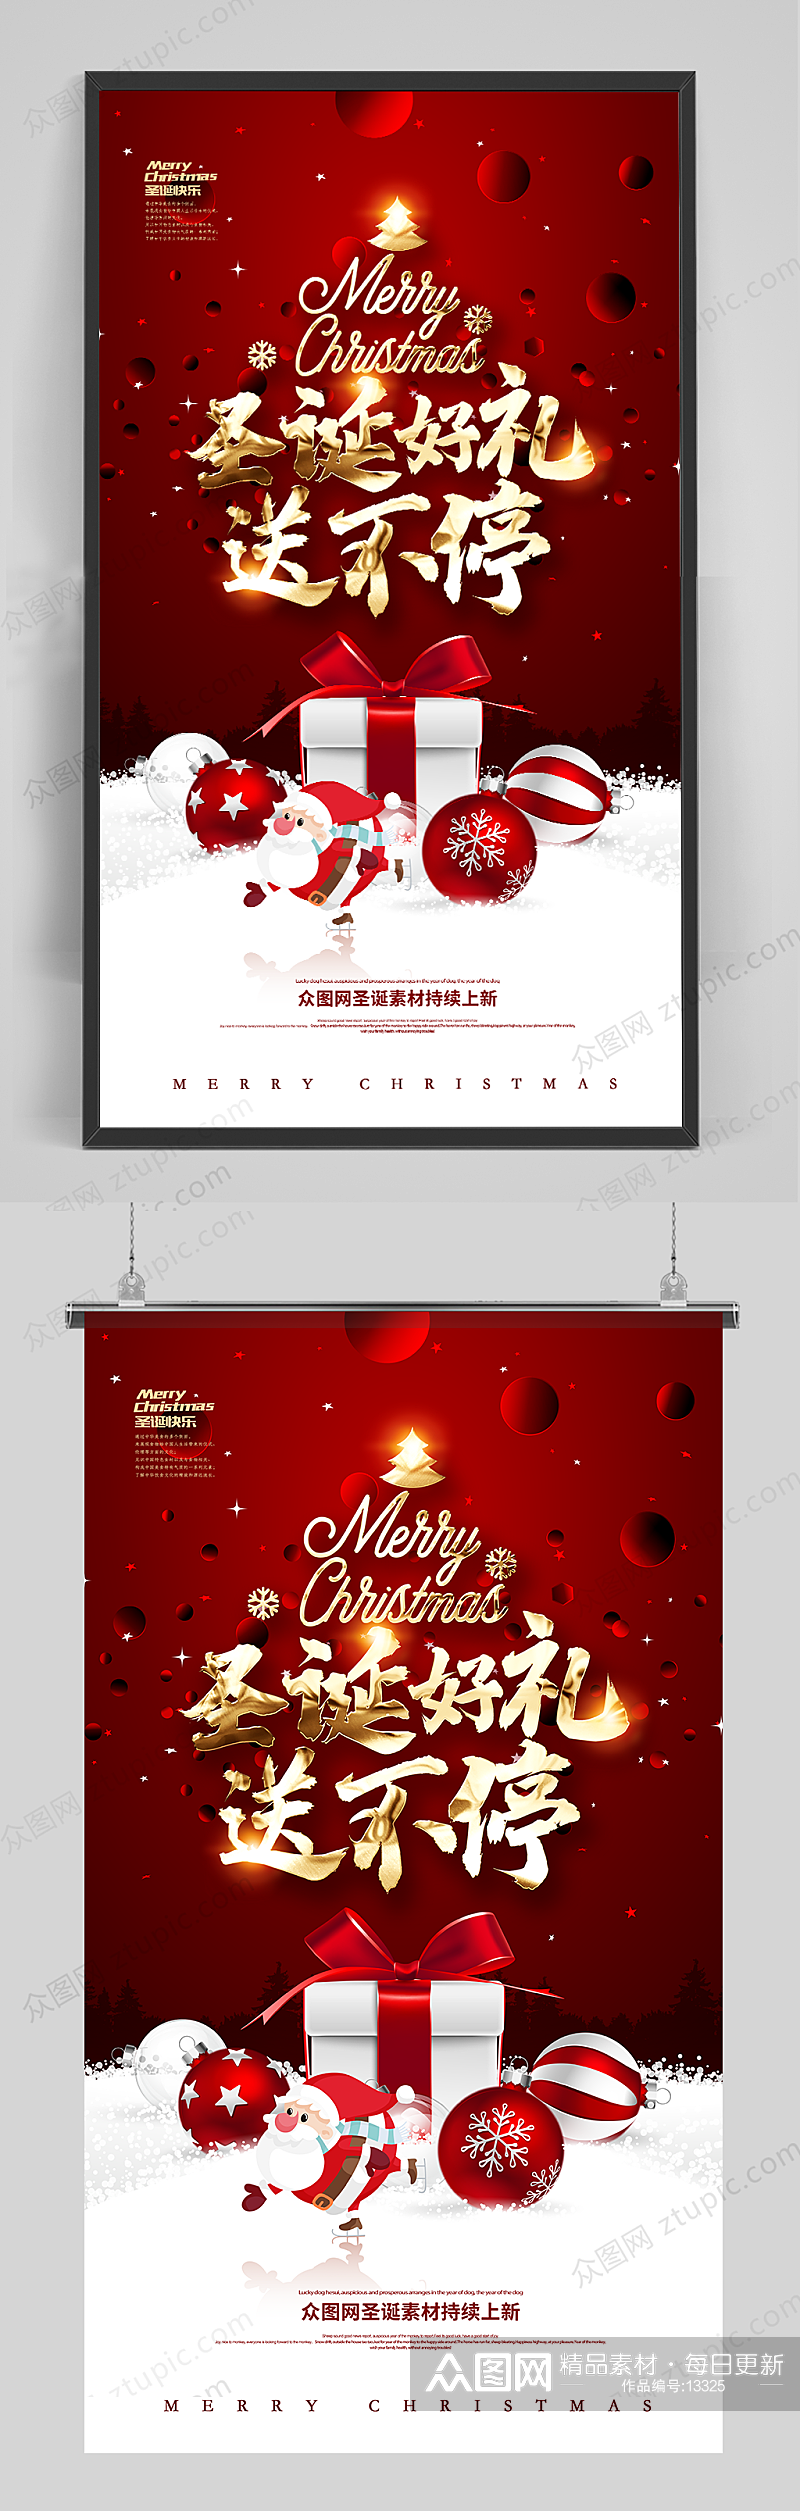 2020圣诞节商场促销海报设计素材